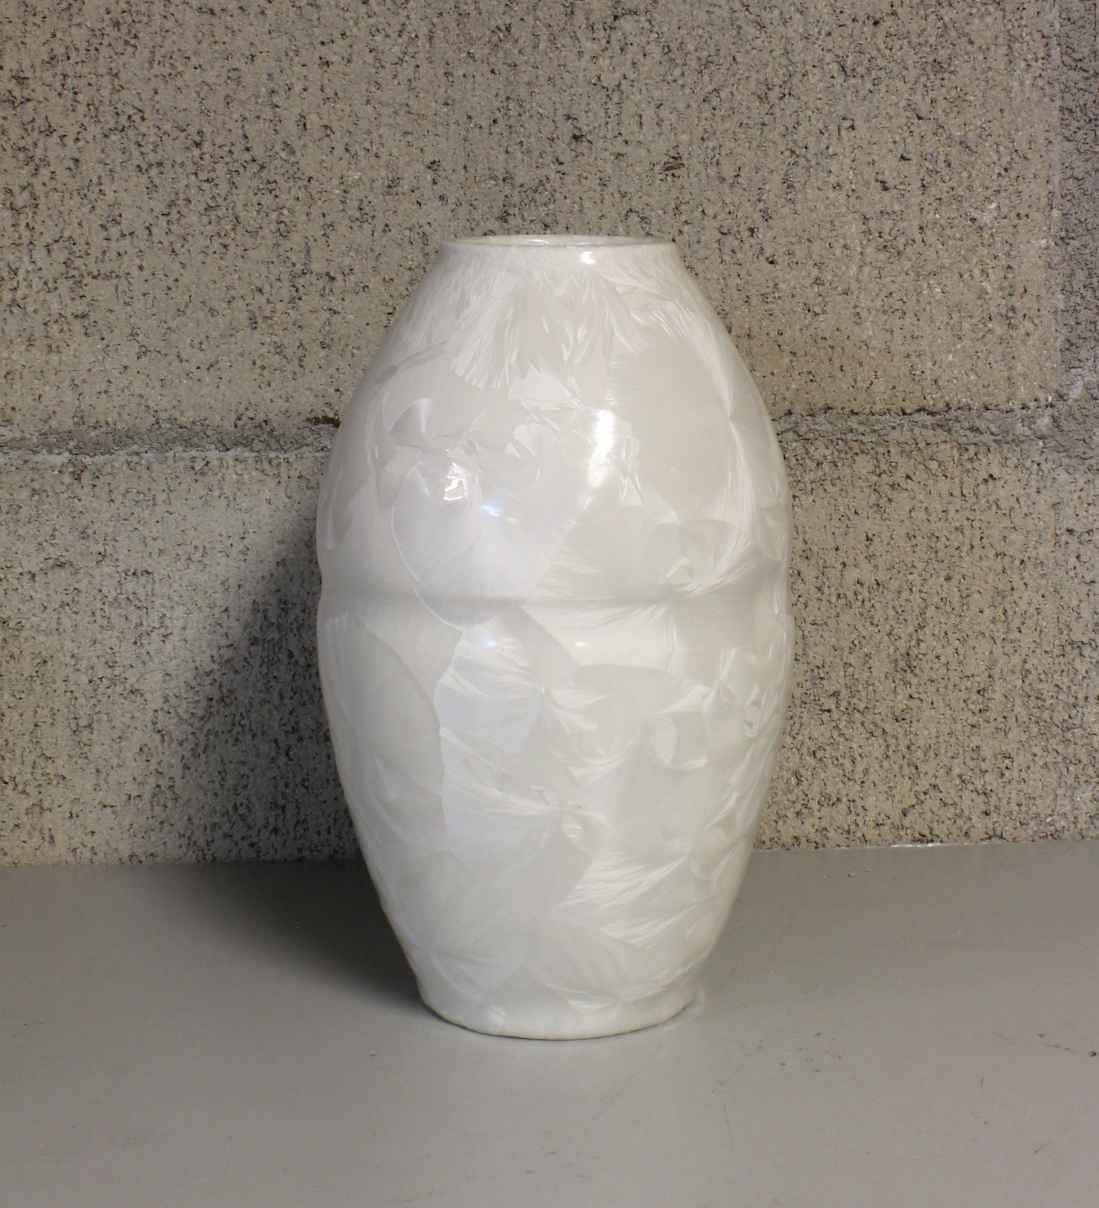 Medium White Vase